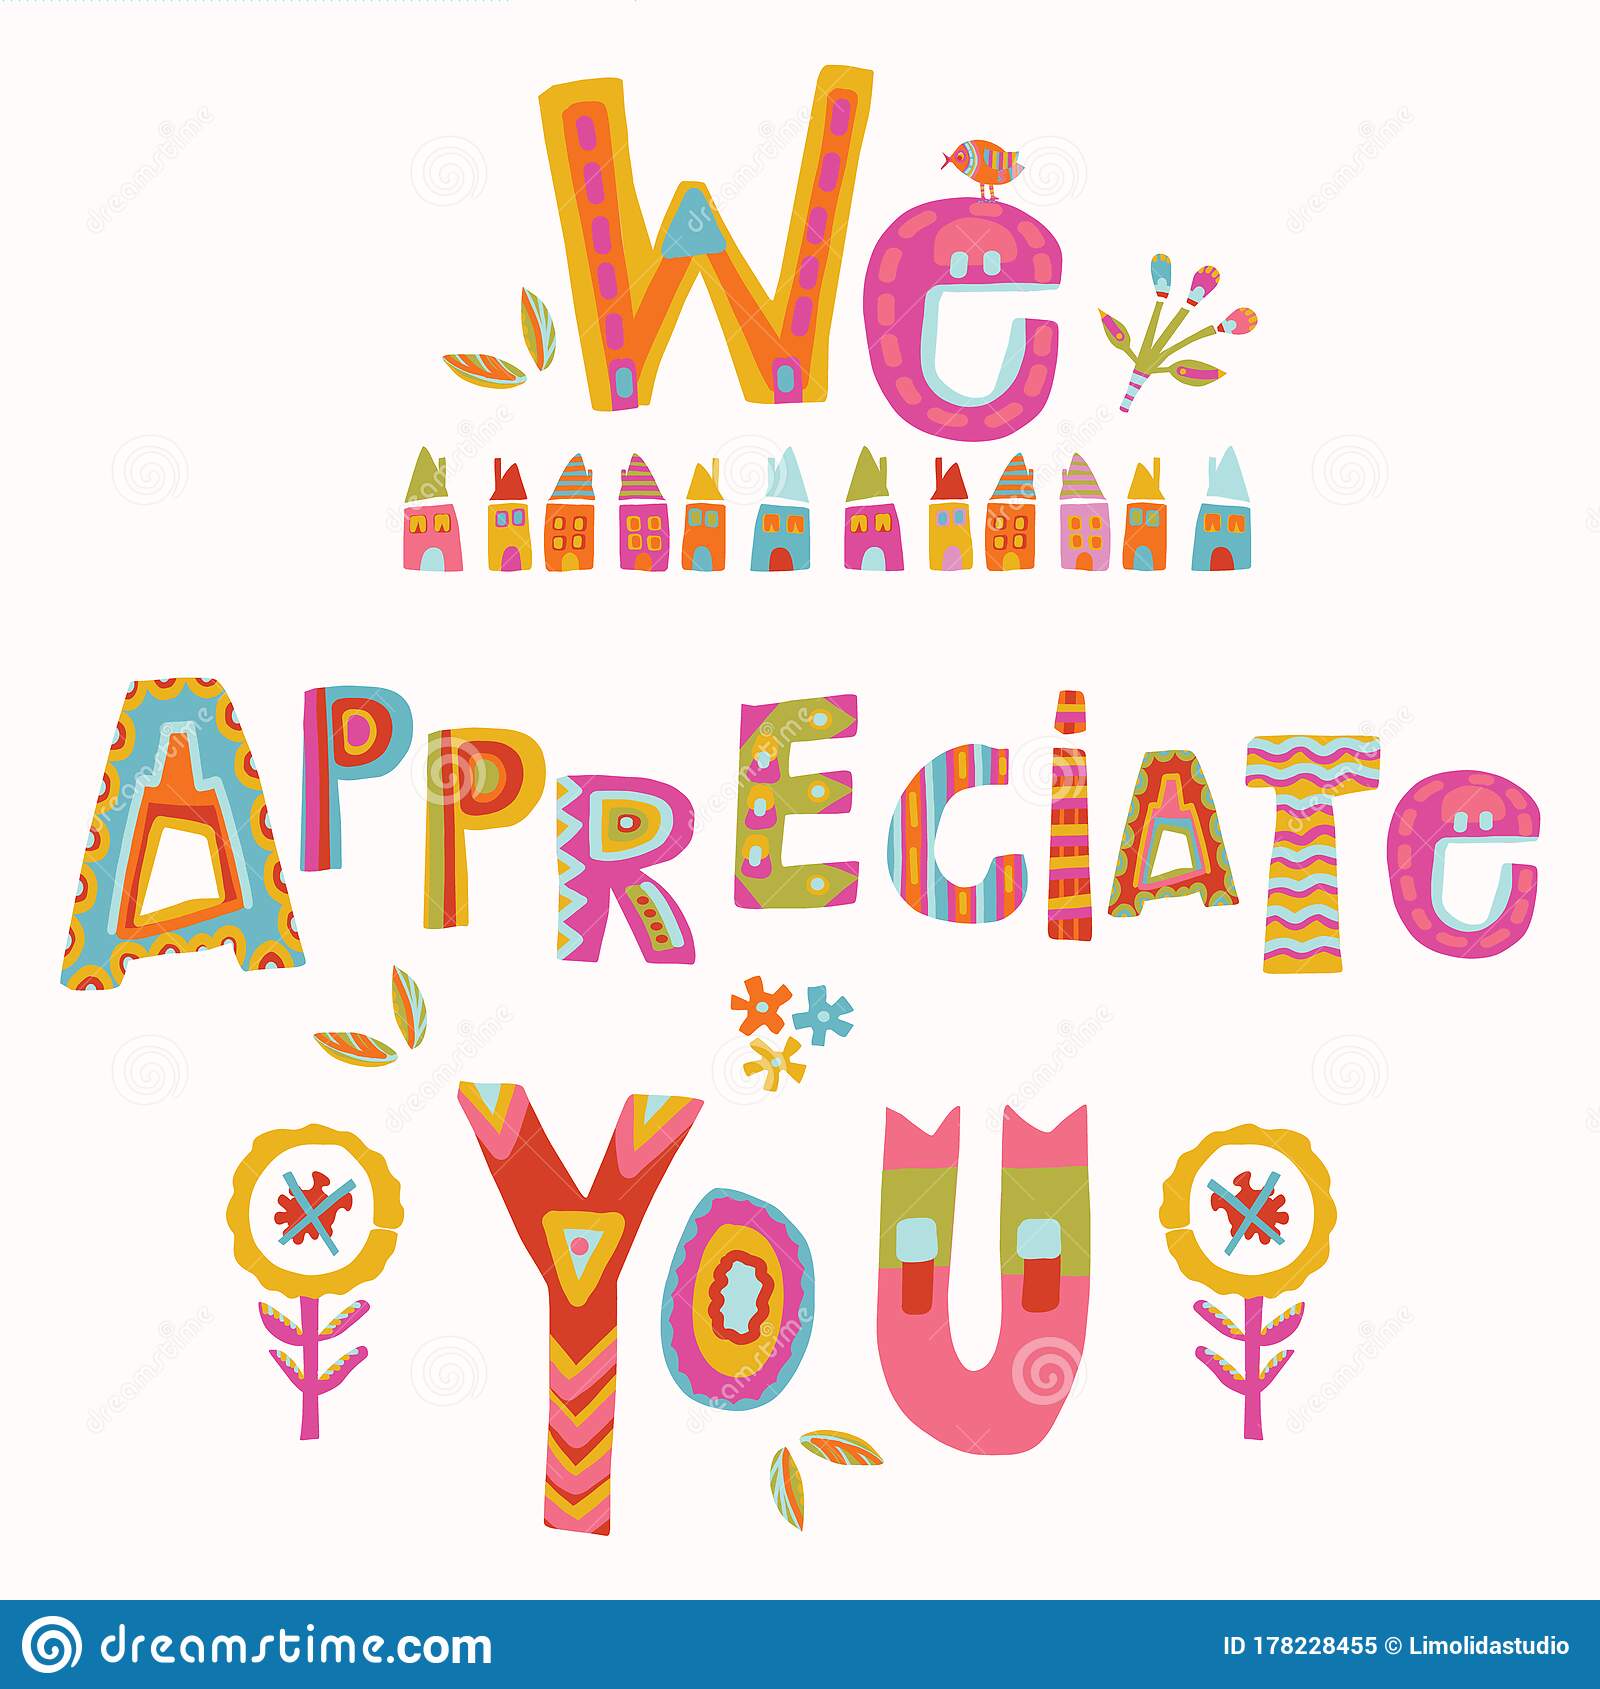 We Appreciate You!